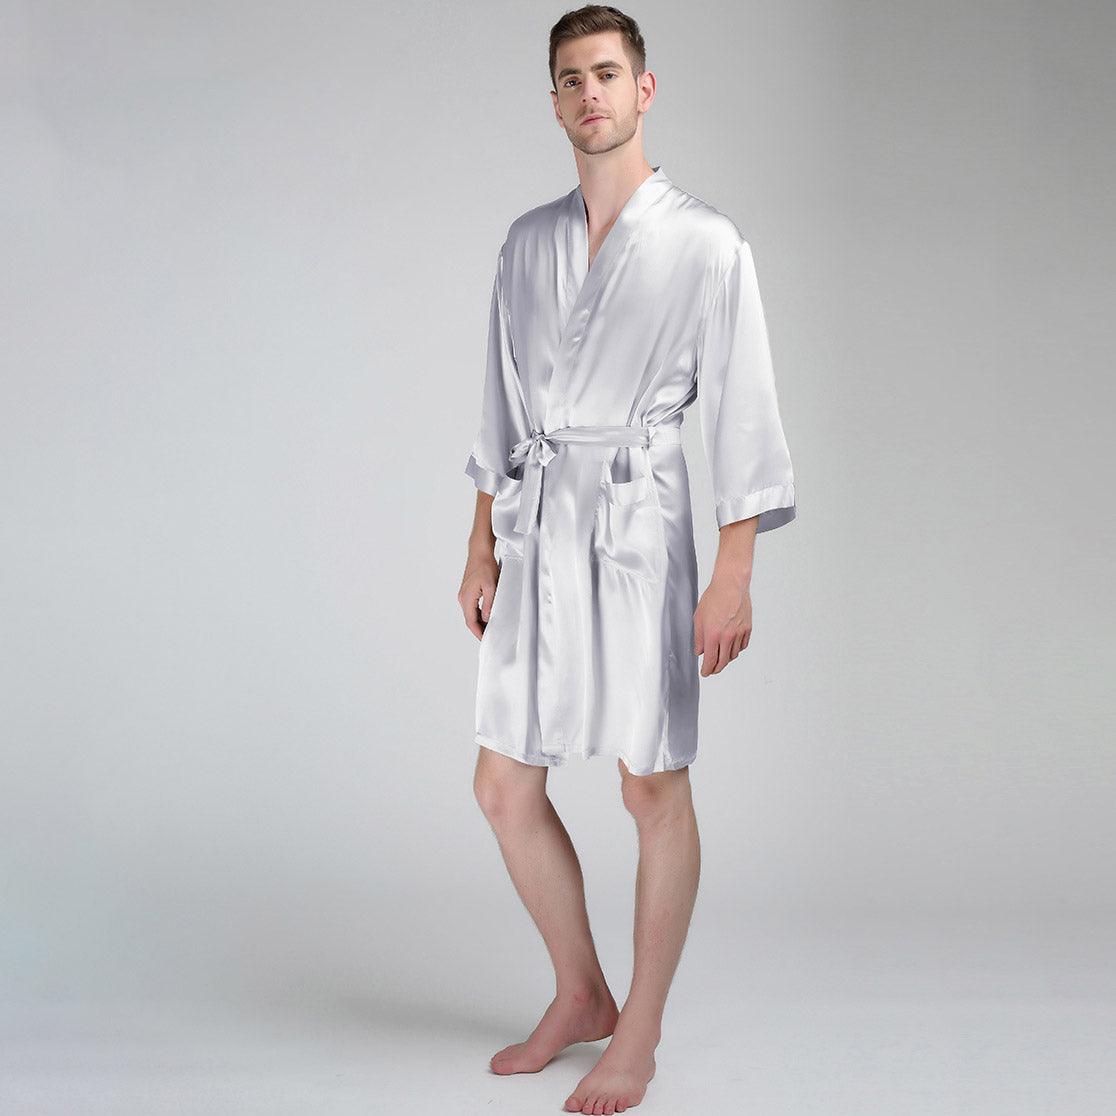 Men's Silk Robe Luxury Pure Mulberry Silk Sleepwear with Pockets